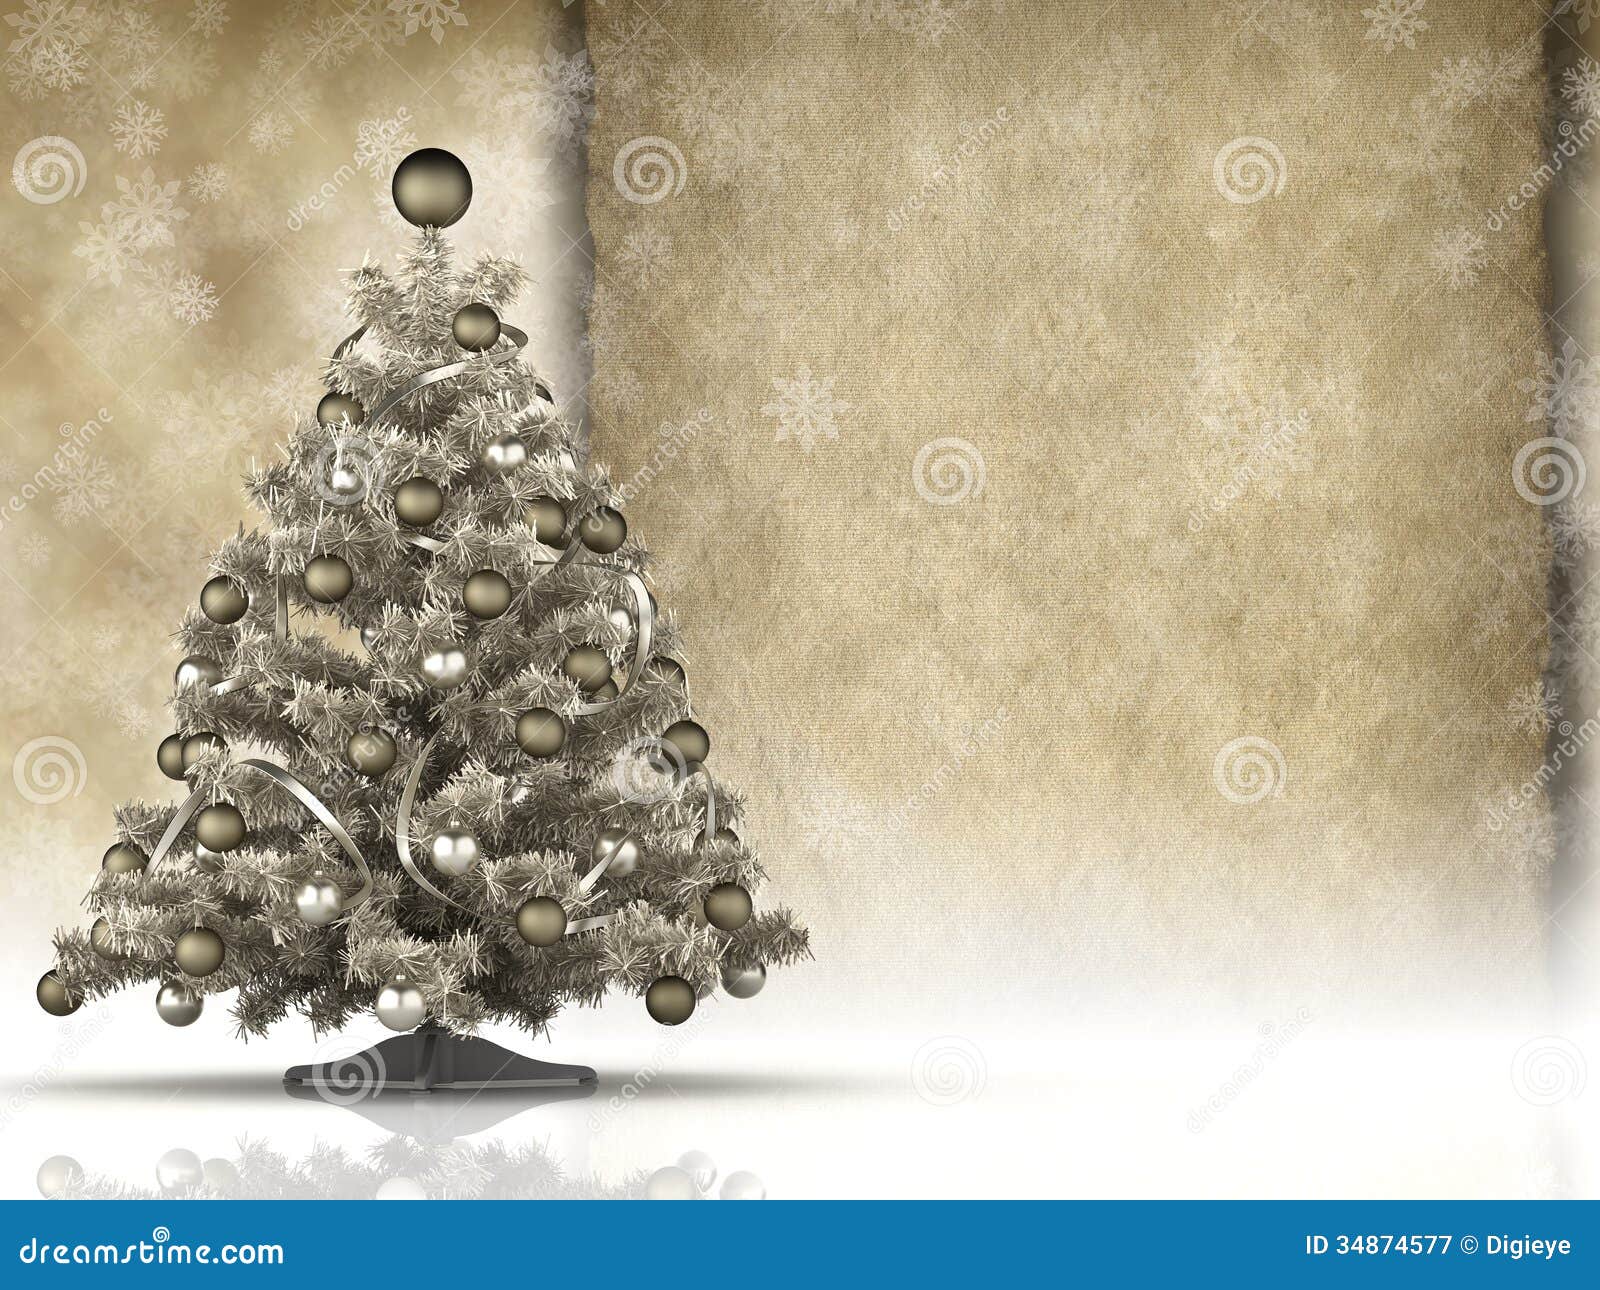 Cartão De Natal - a árvore De Natal E O Papel Feito a Mão Vazio Cobrem  Ilustração Stock - Ilustração de artesanal, feriado: 34874577